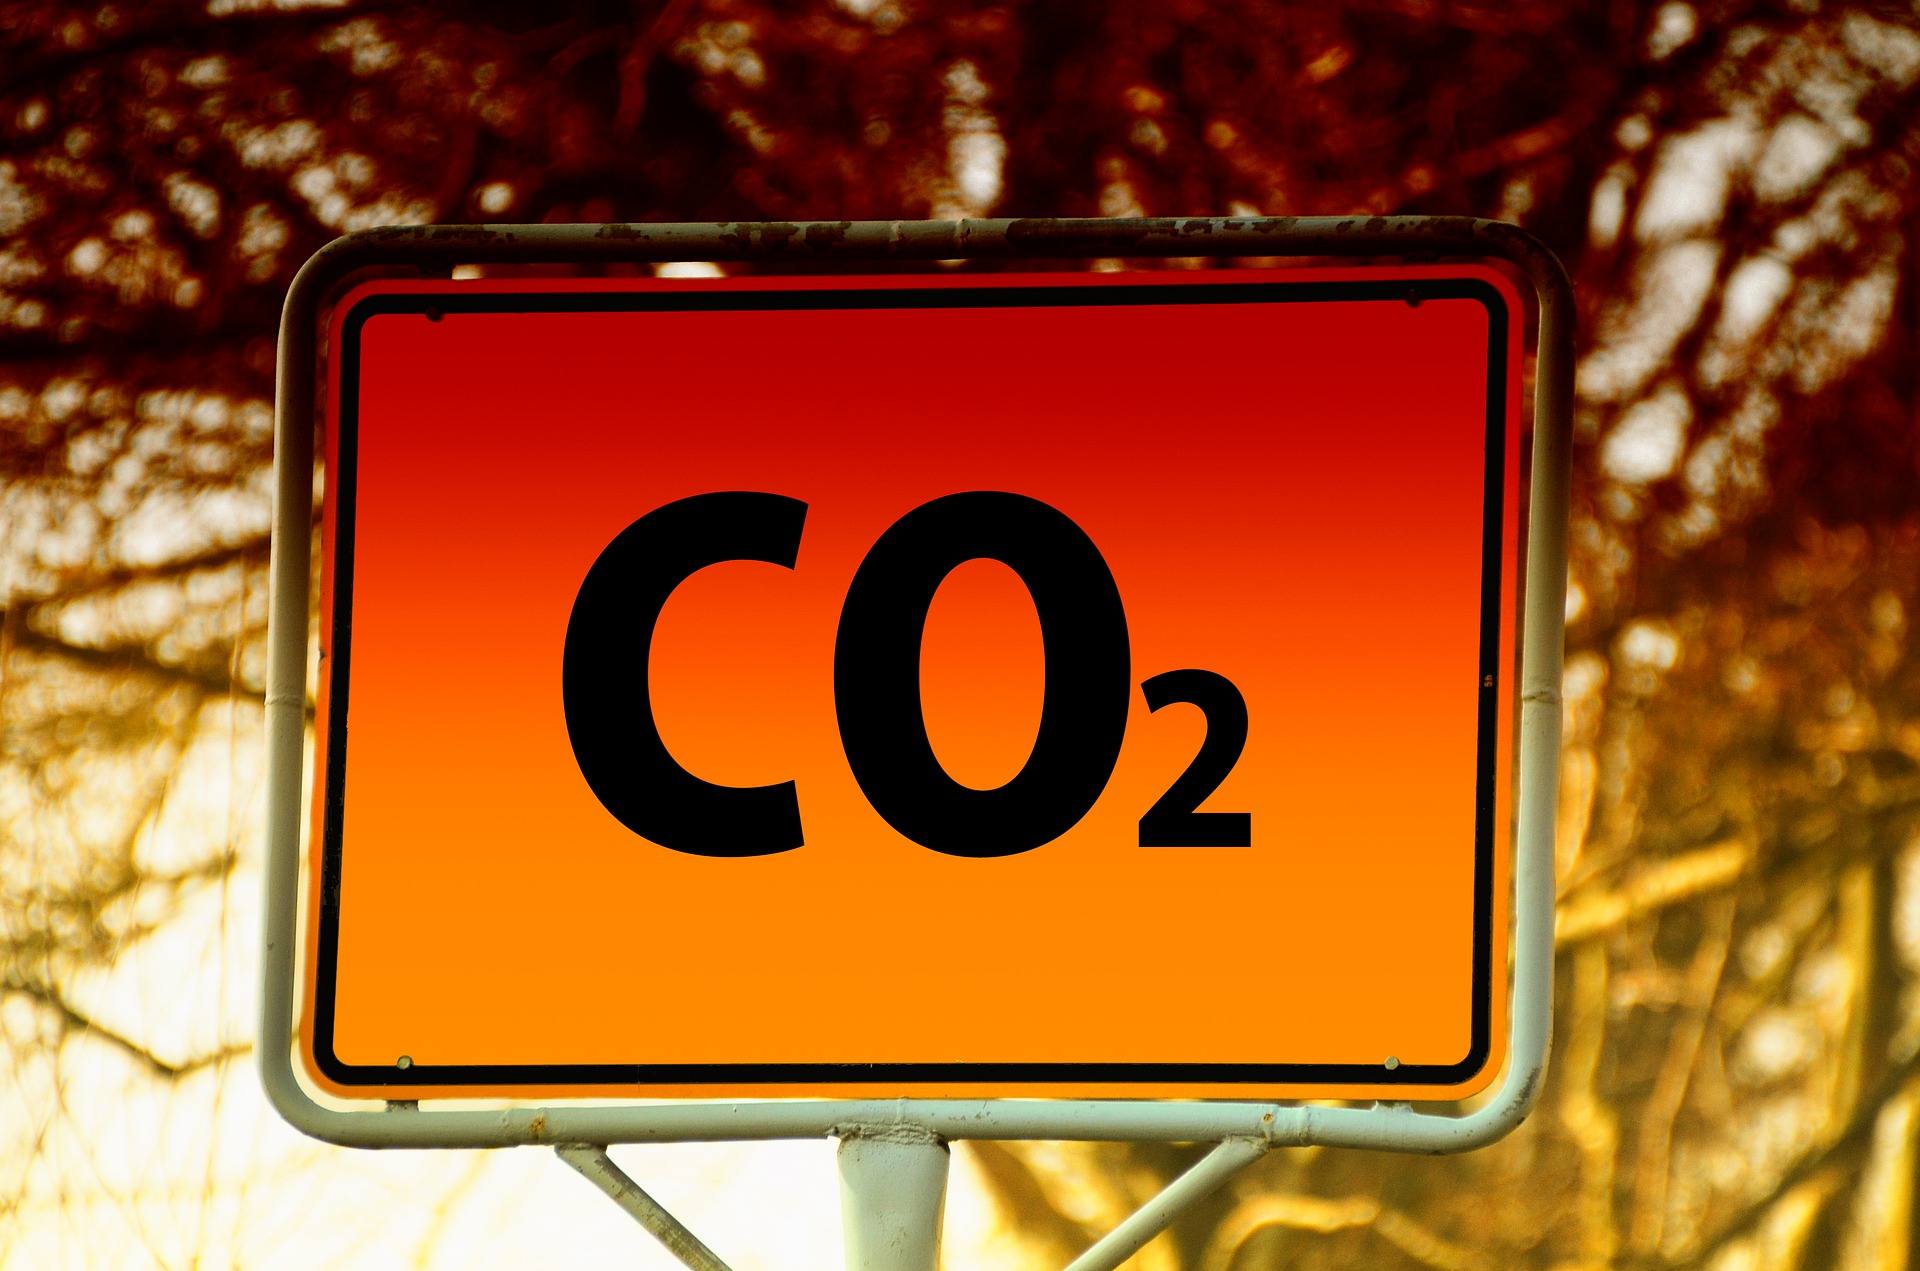 Kohlenstoffdioxid zählt zu den schädlichsten Treibhausgasen. Credits: pixabay